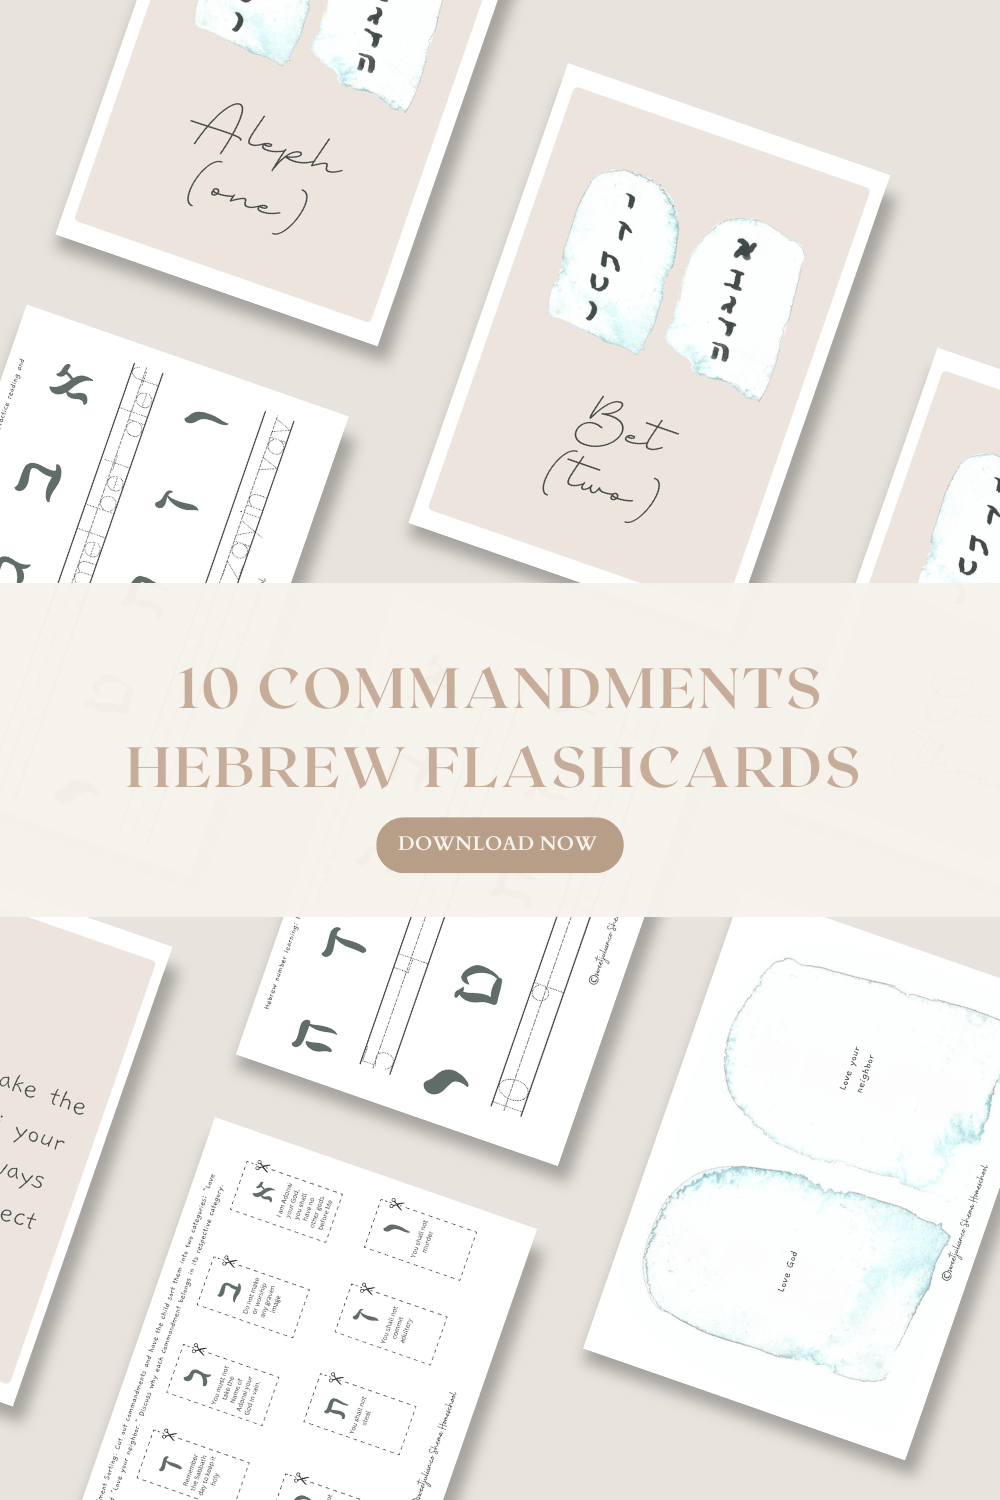 10 Commandments Flashcards + More